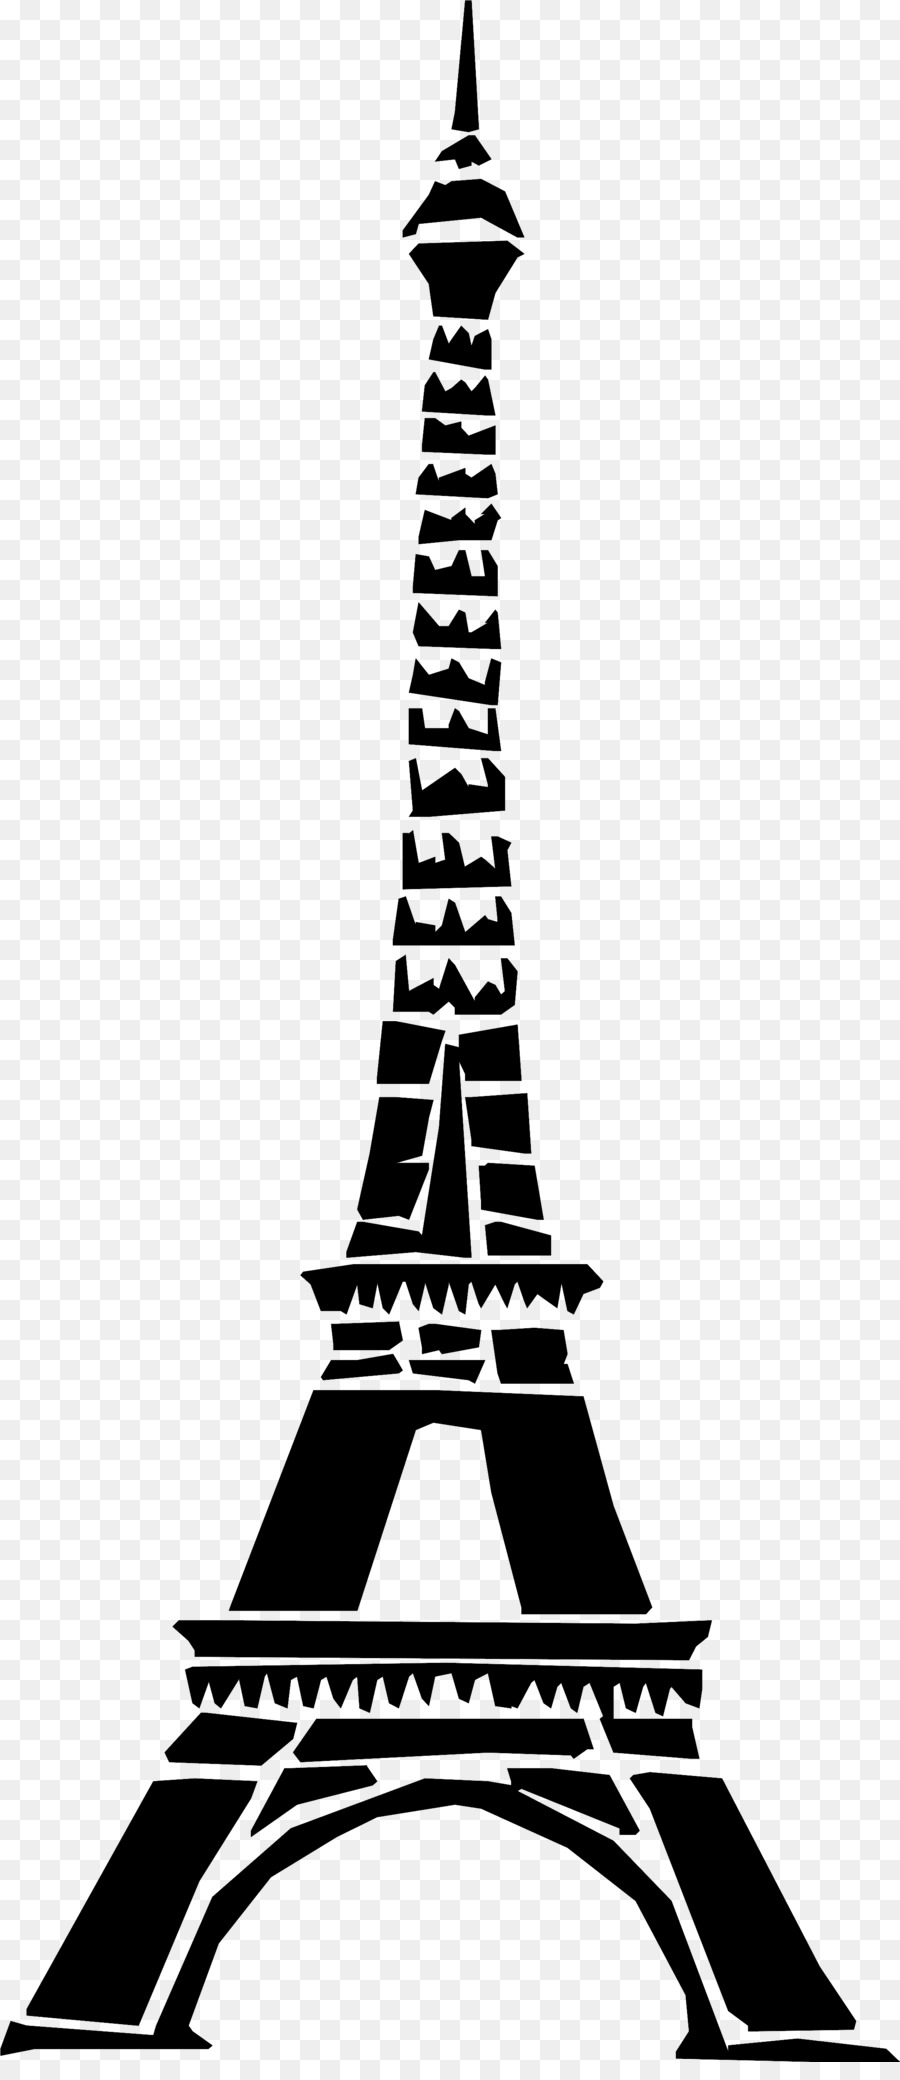 Eiffel tower drawing.